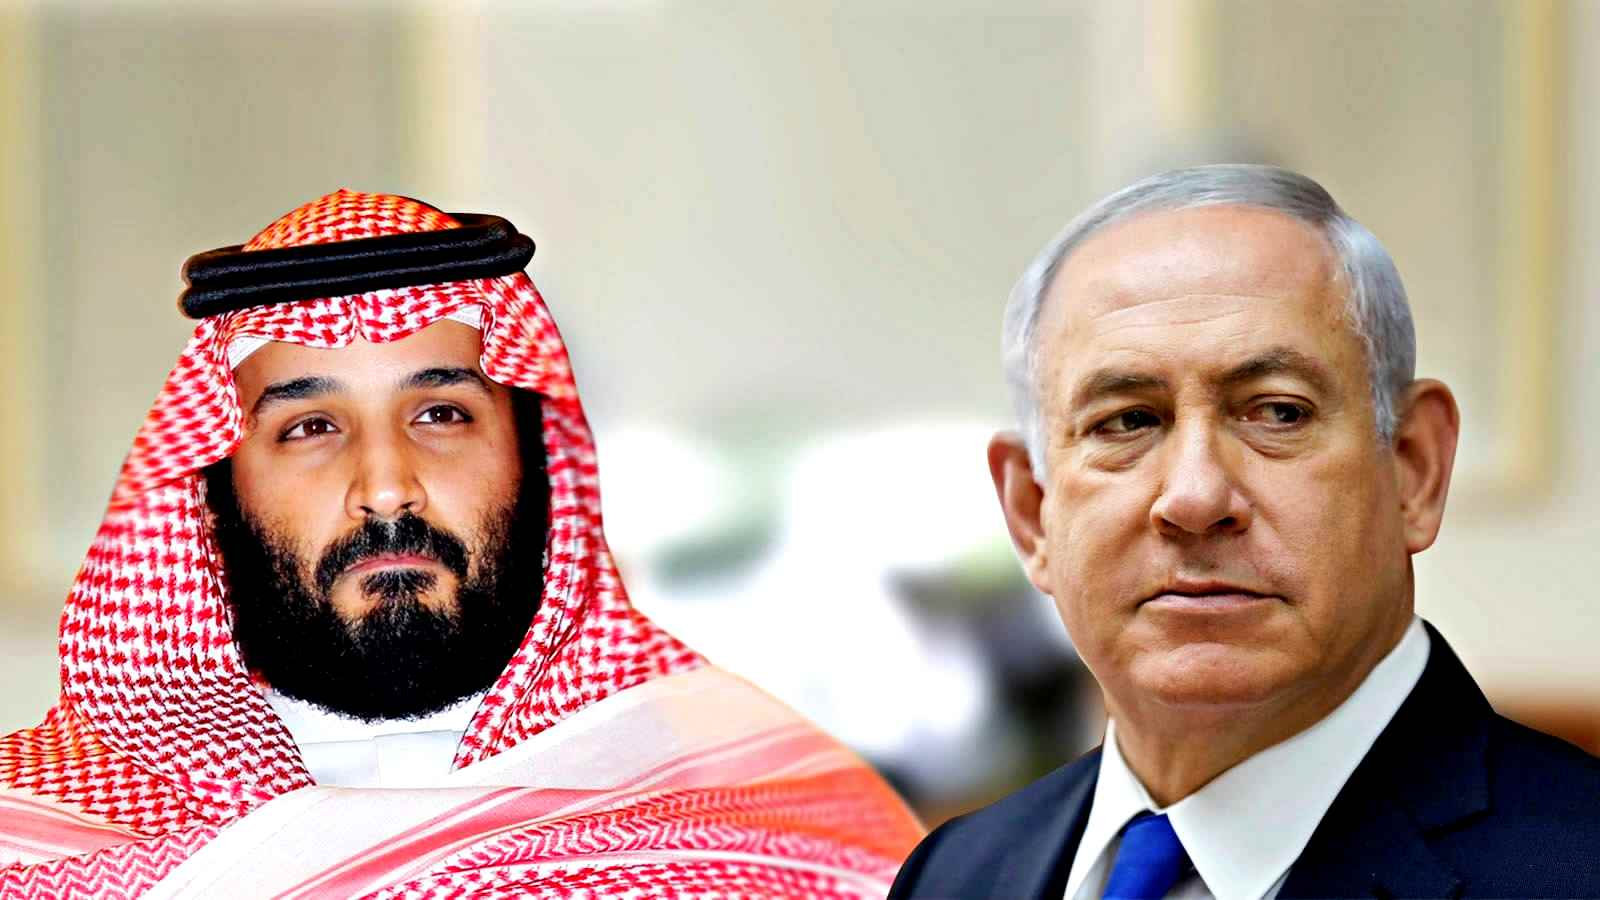 Arabia Saudita-Israele, l’incontro segreto che mira alla “normalizzazione”